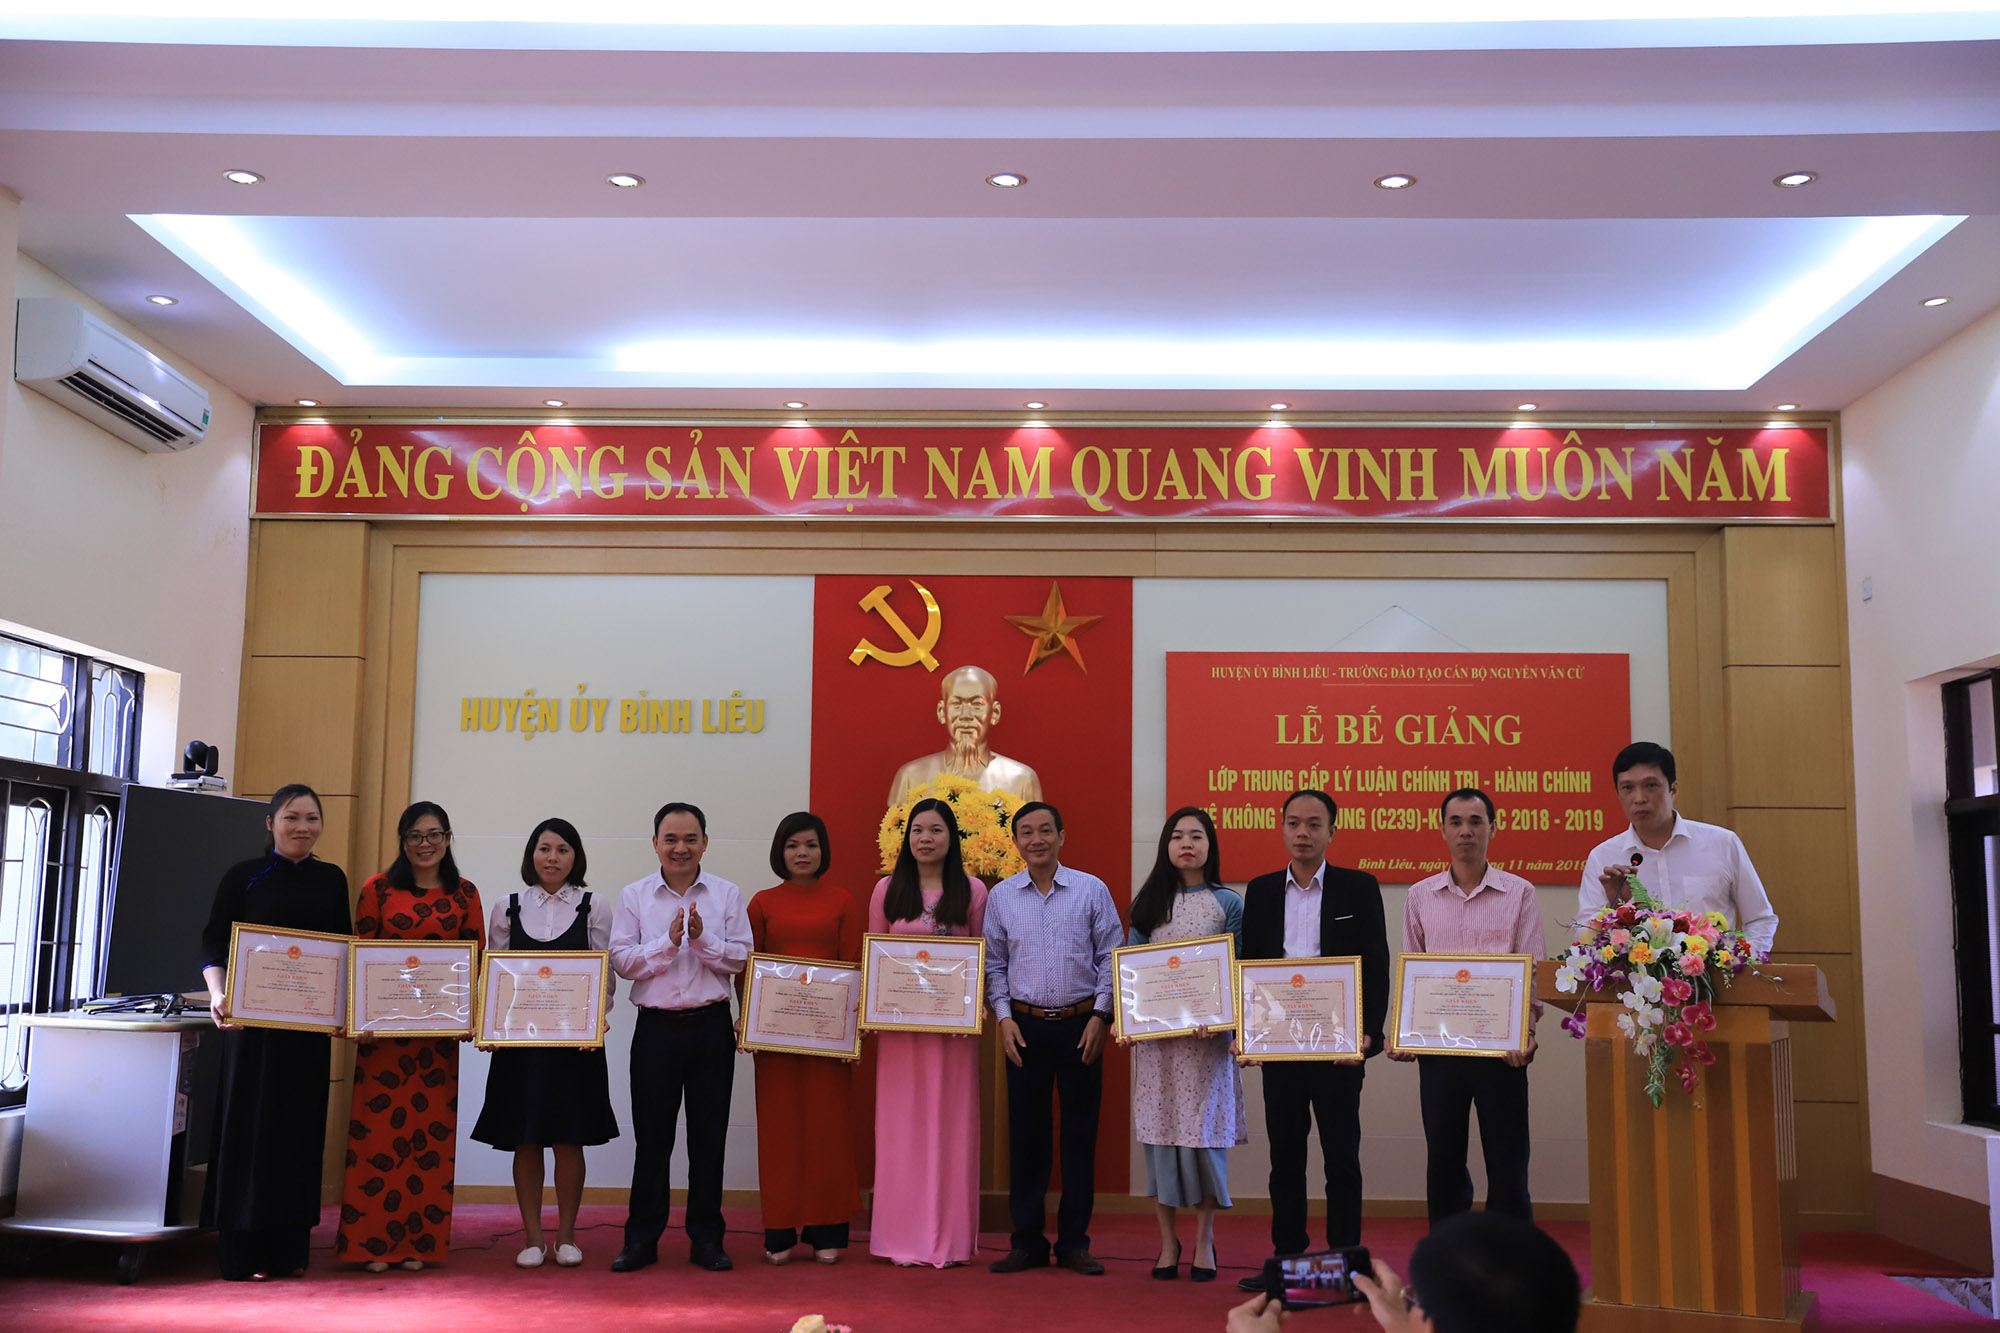 Huyện ủy Bình Liêu phố hợp với Trường Đào tạo cán bộ Nguyễn Văn Cừ bế giảng lớp trung cấp lý luận chính trị - hành chính tại huyện.